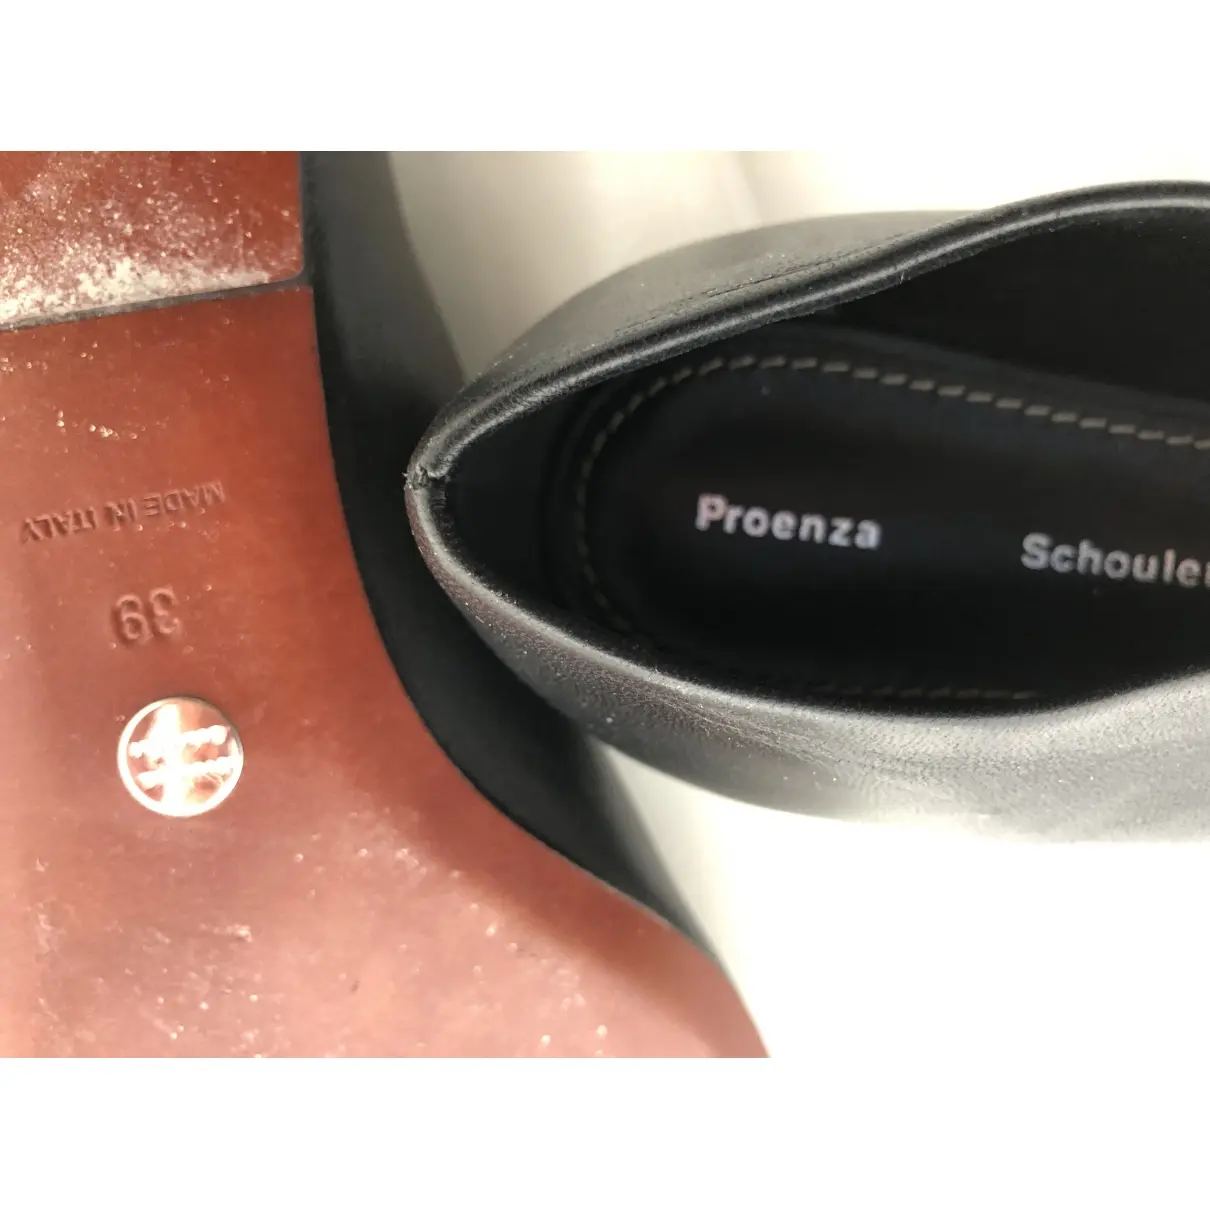 Buy Proenza Schouler Leather flats online